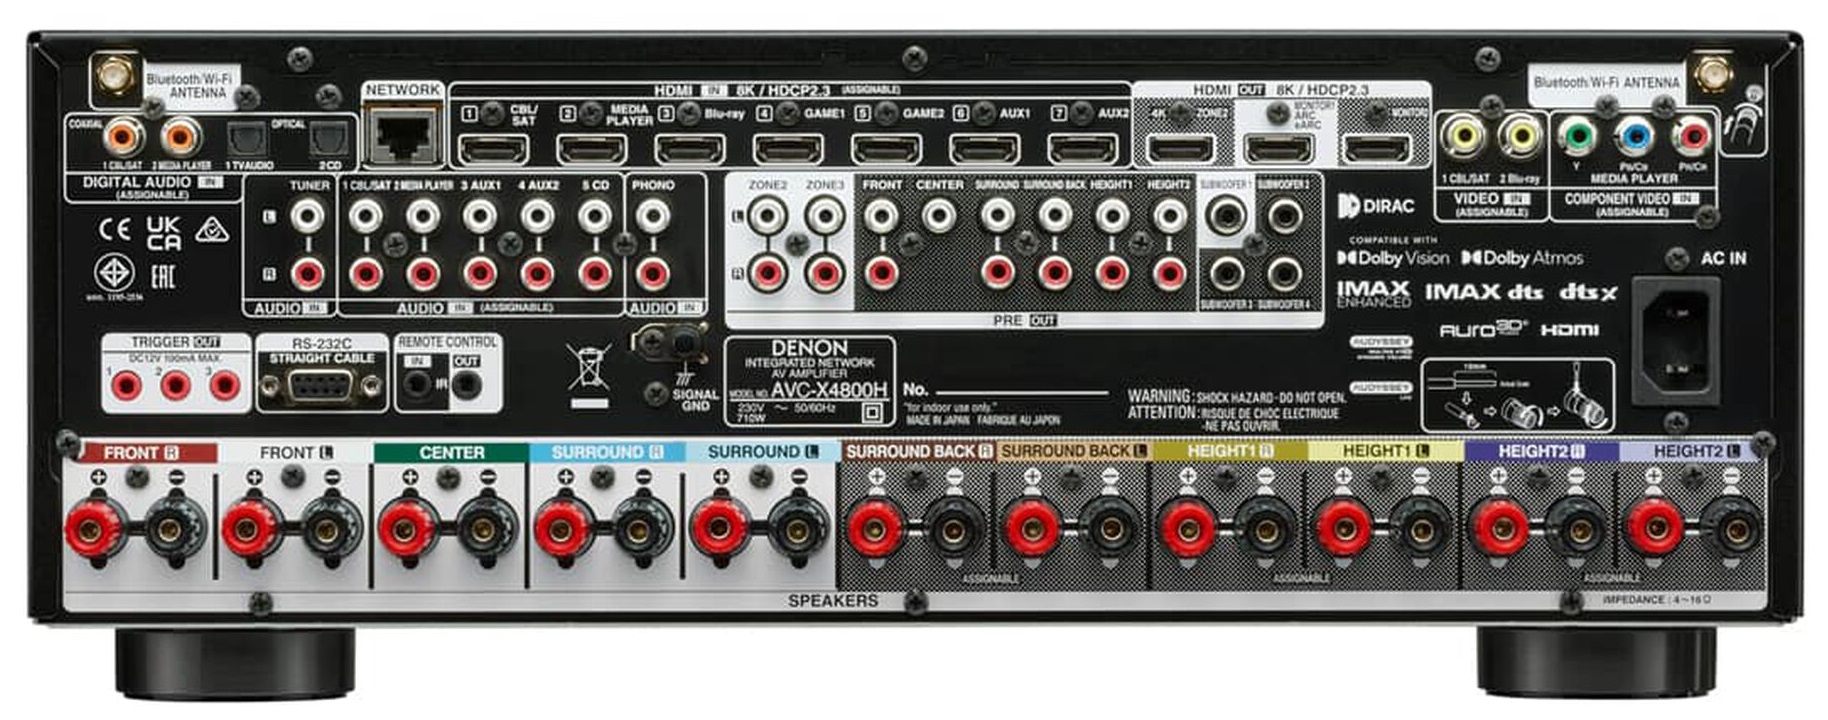 Denon AVC-X4800H | Ampli nghe nhạc - xem phim | Anh Duy Audio